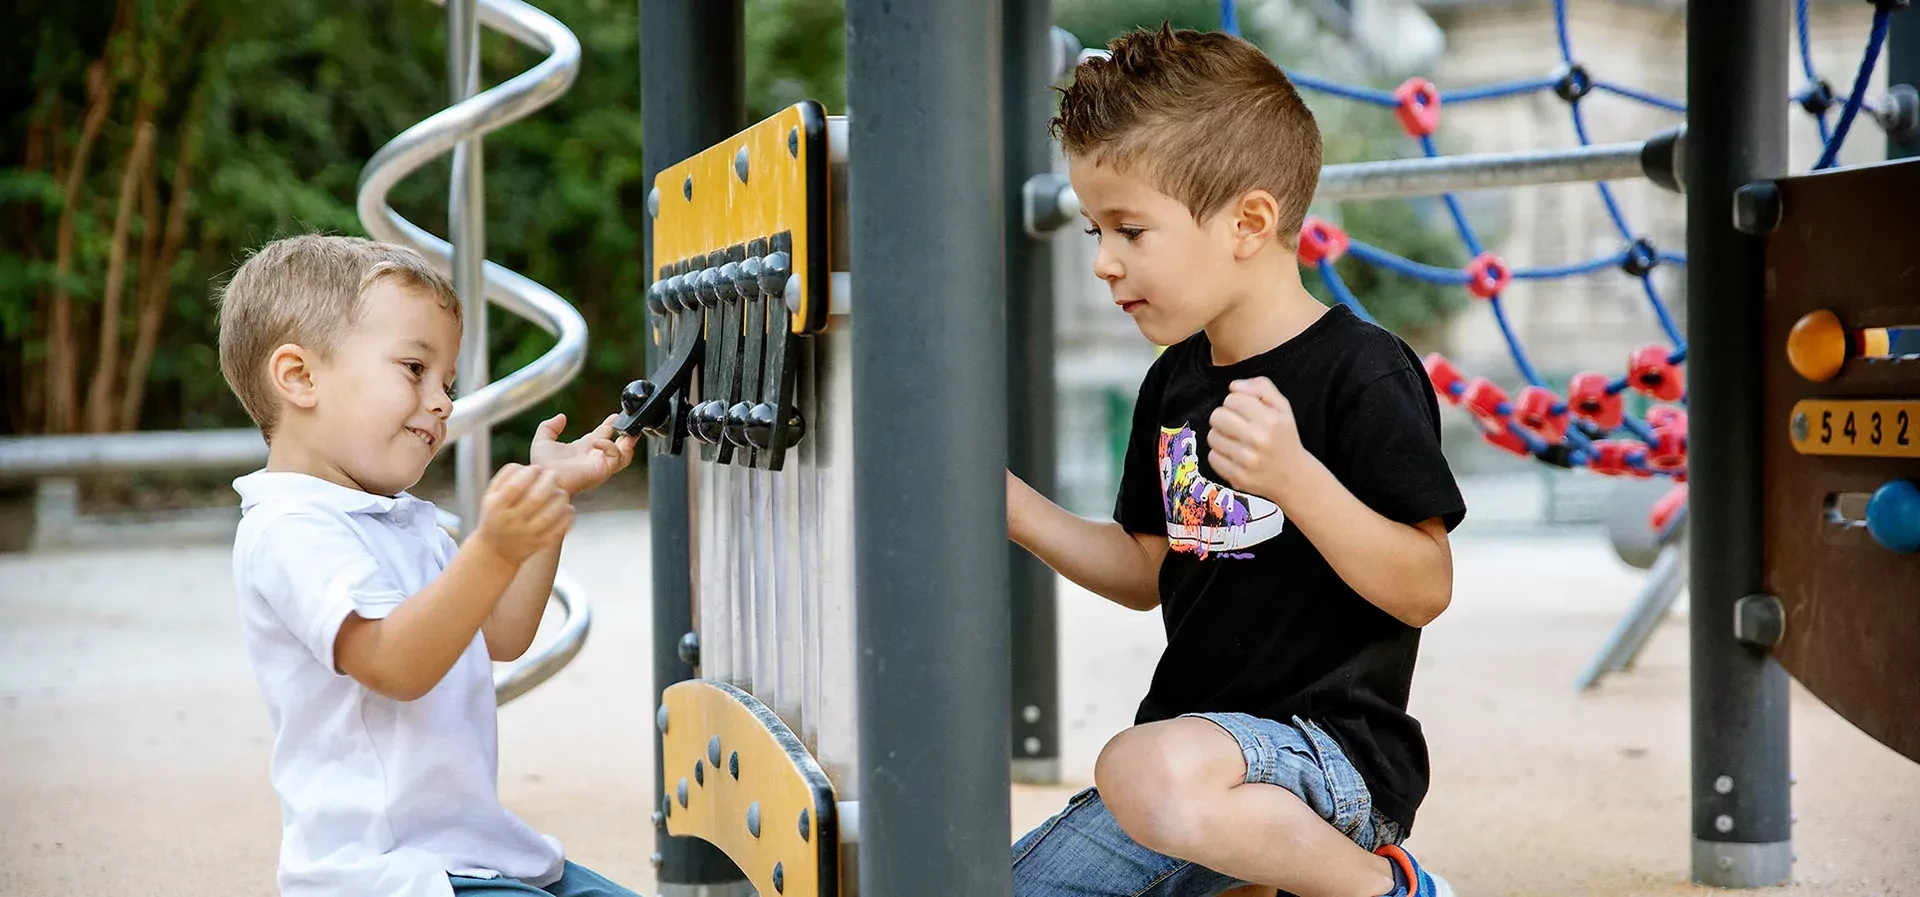 Kinder spielen an einer Spielwand auf einem Spielplatz in einem Park